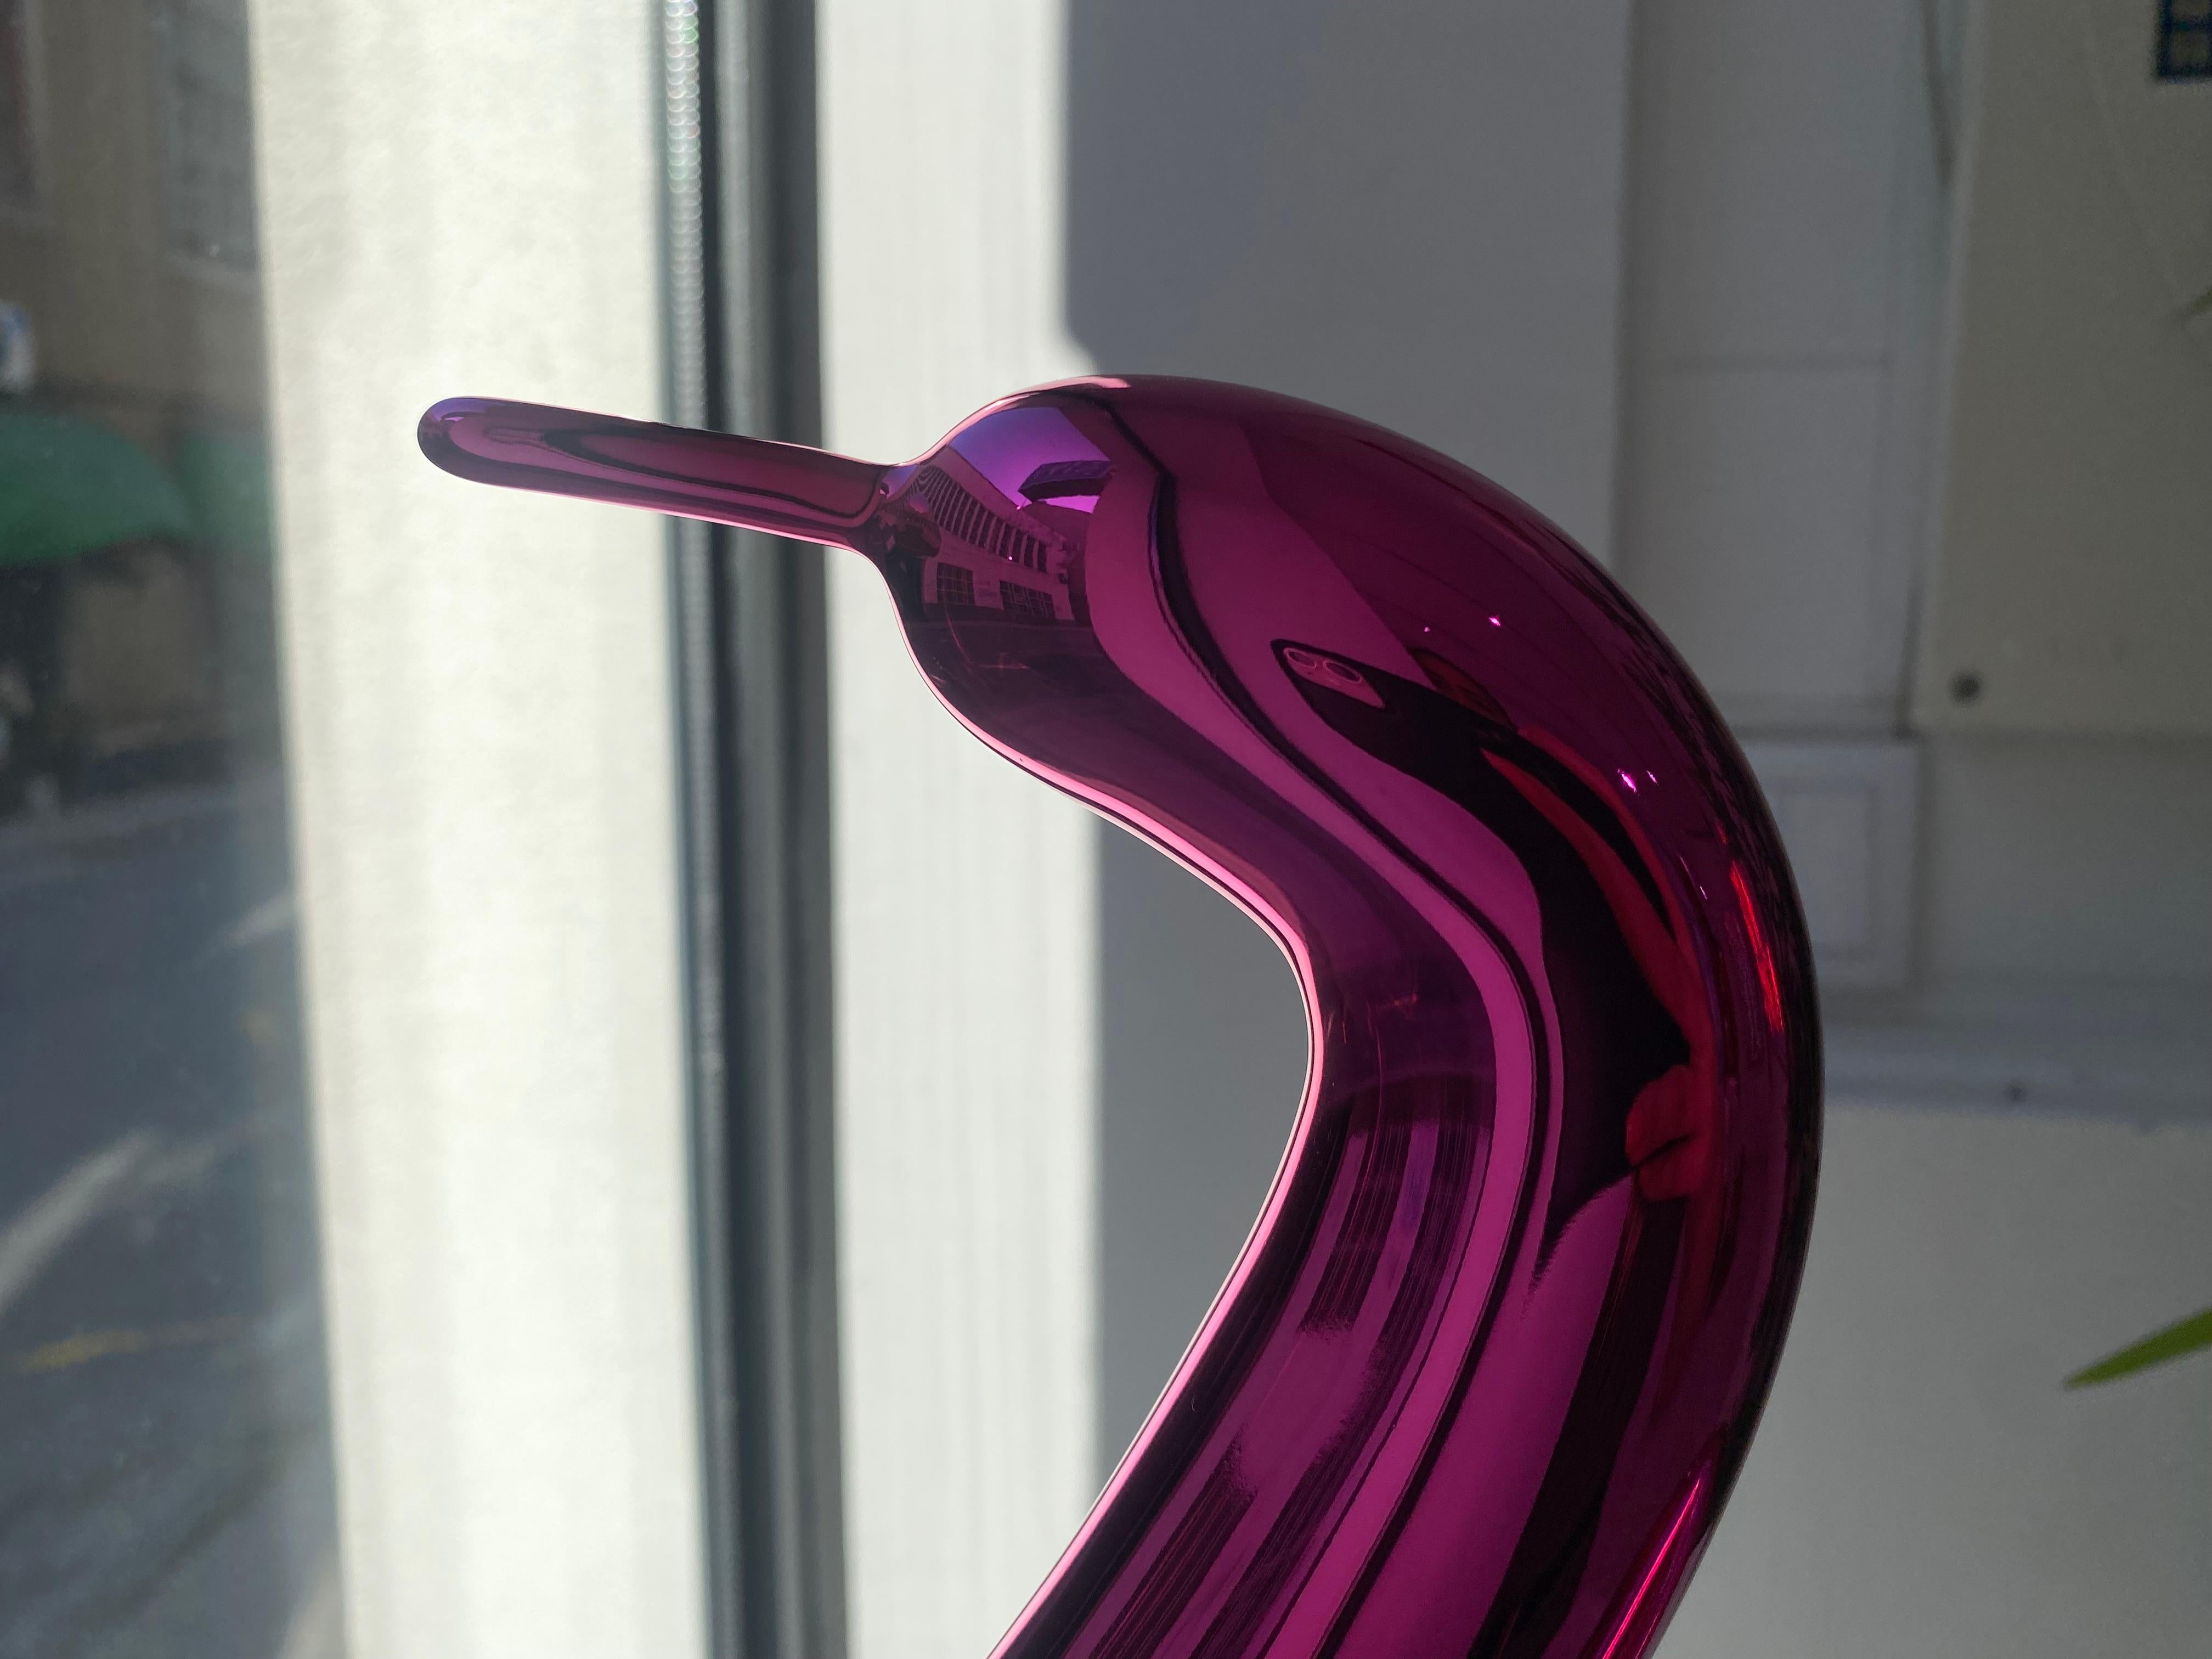 Édition limitée à 999 exemplaires.

Jeff Koons transforme un simple cygne en ballon torsadé en une porcelaine magenta réfléchissante pour son édition limitée, Balloon Swan (Magenta). L'original Balloon Swan, 2004-2011, est une sculpture monumentale